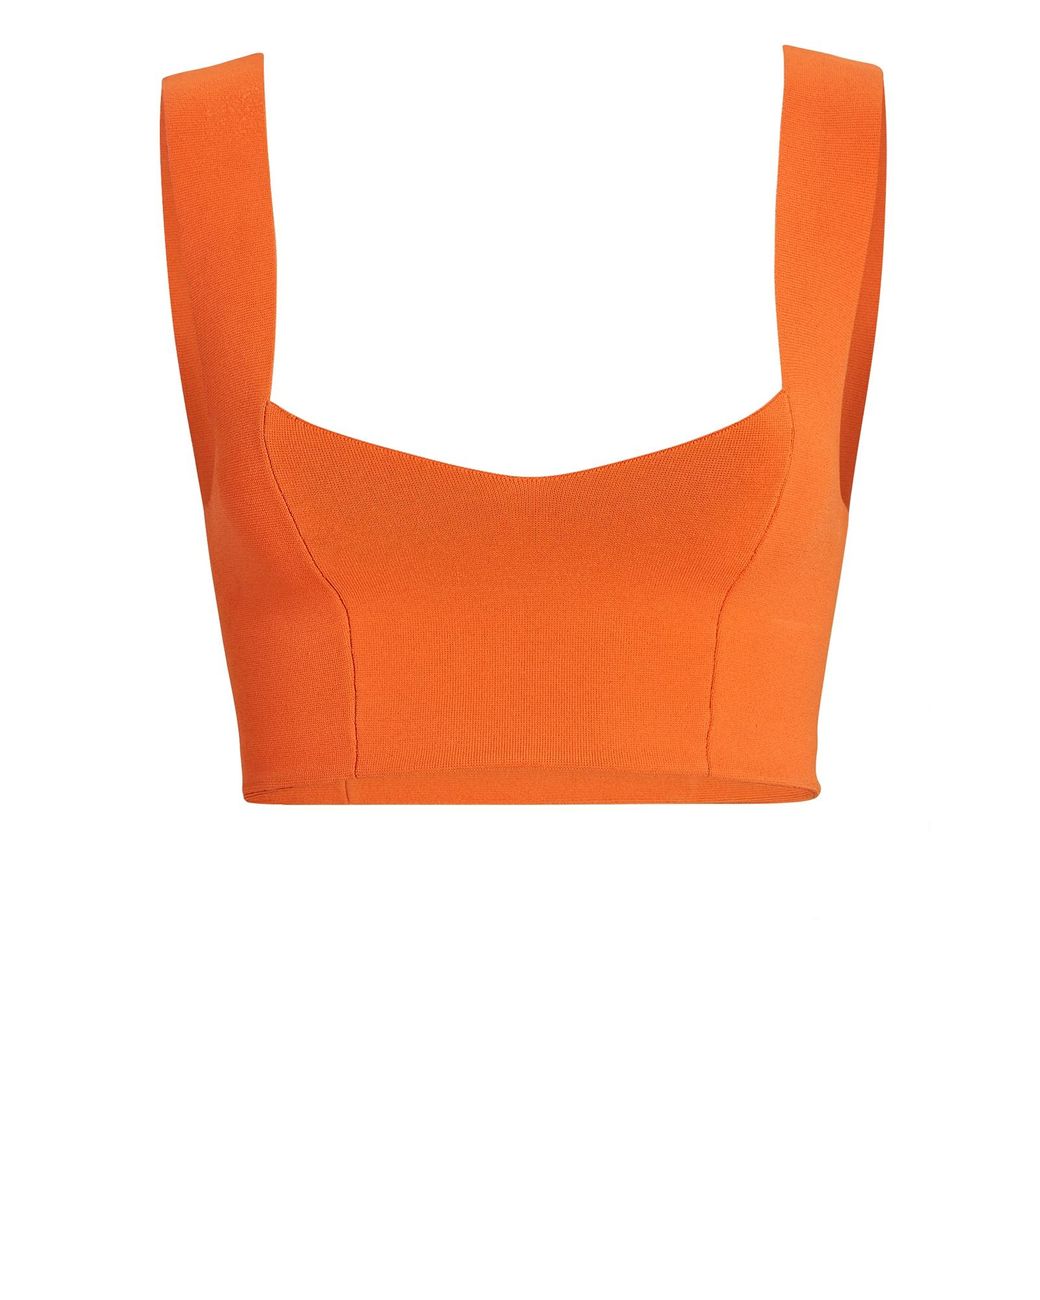 A.L.C. Jordana Compact Knit Bra in Orange